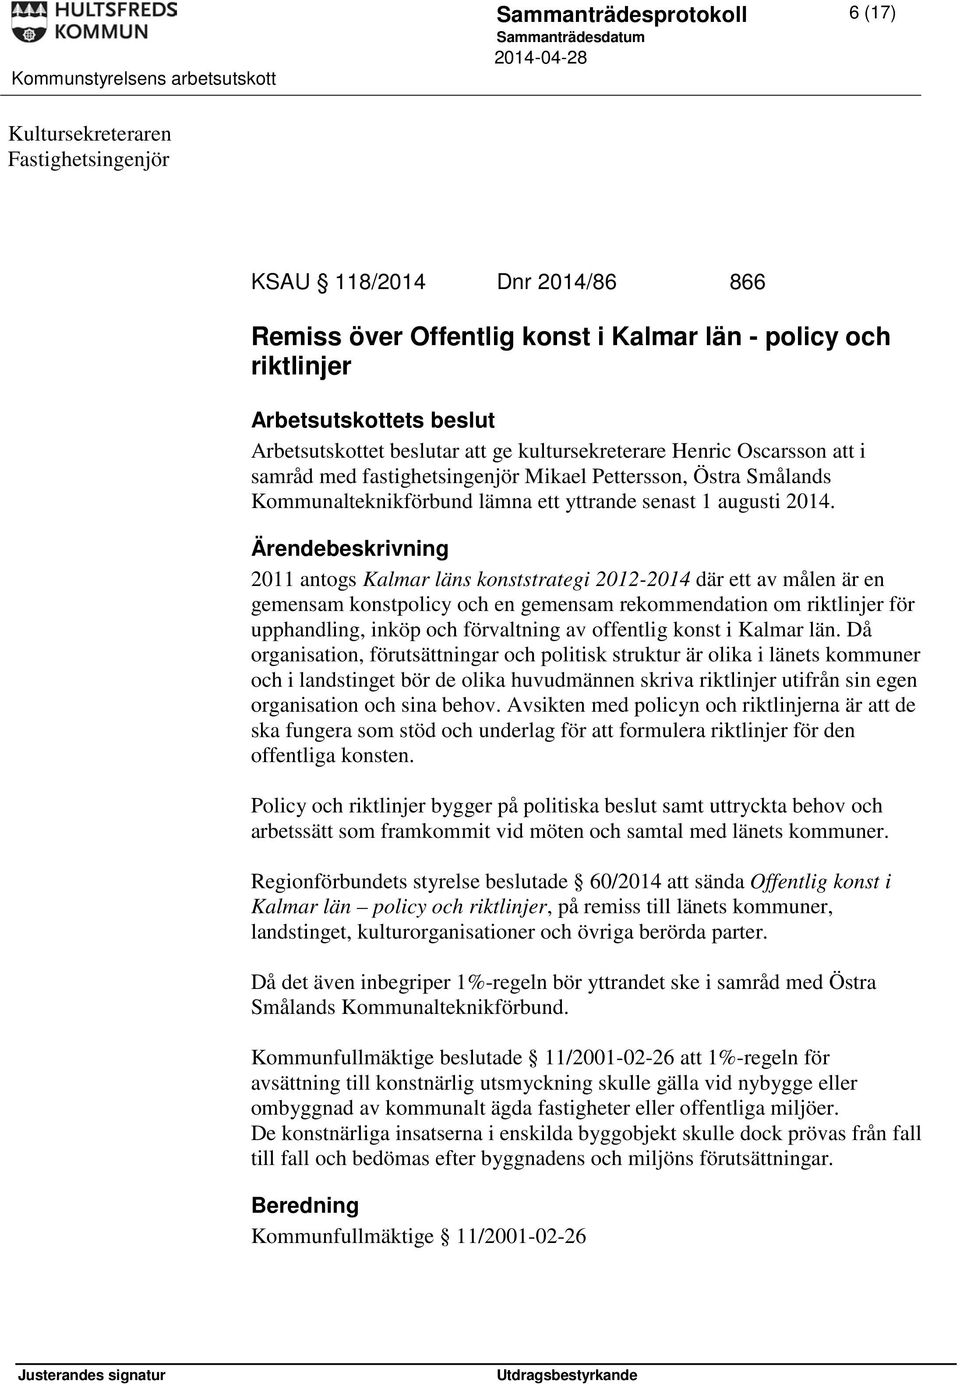 2011 antogs Kalmar läns konststrategi 2012-2014 där ett av målen är en gemensam konstpolicy och en gemensam rekommendation om riktlinjer för upphandling, inköp och förvaltning av offentlig konst i